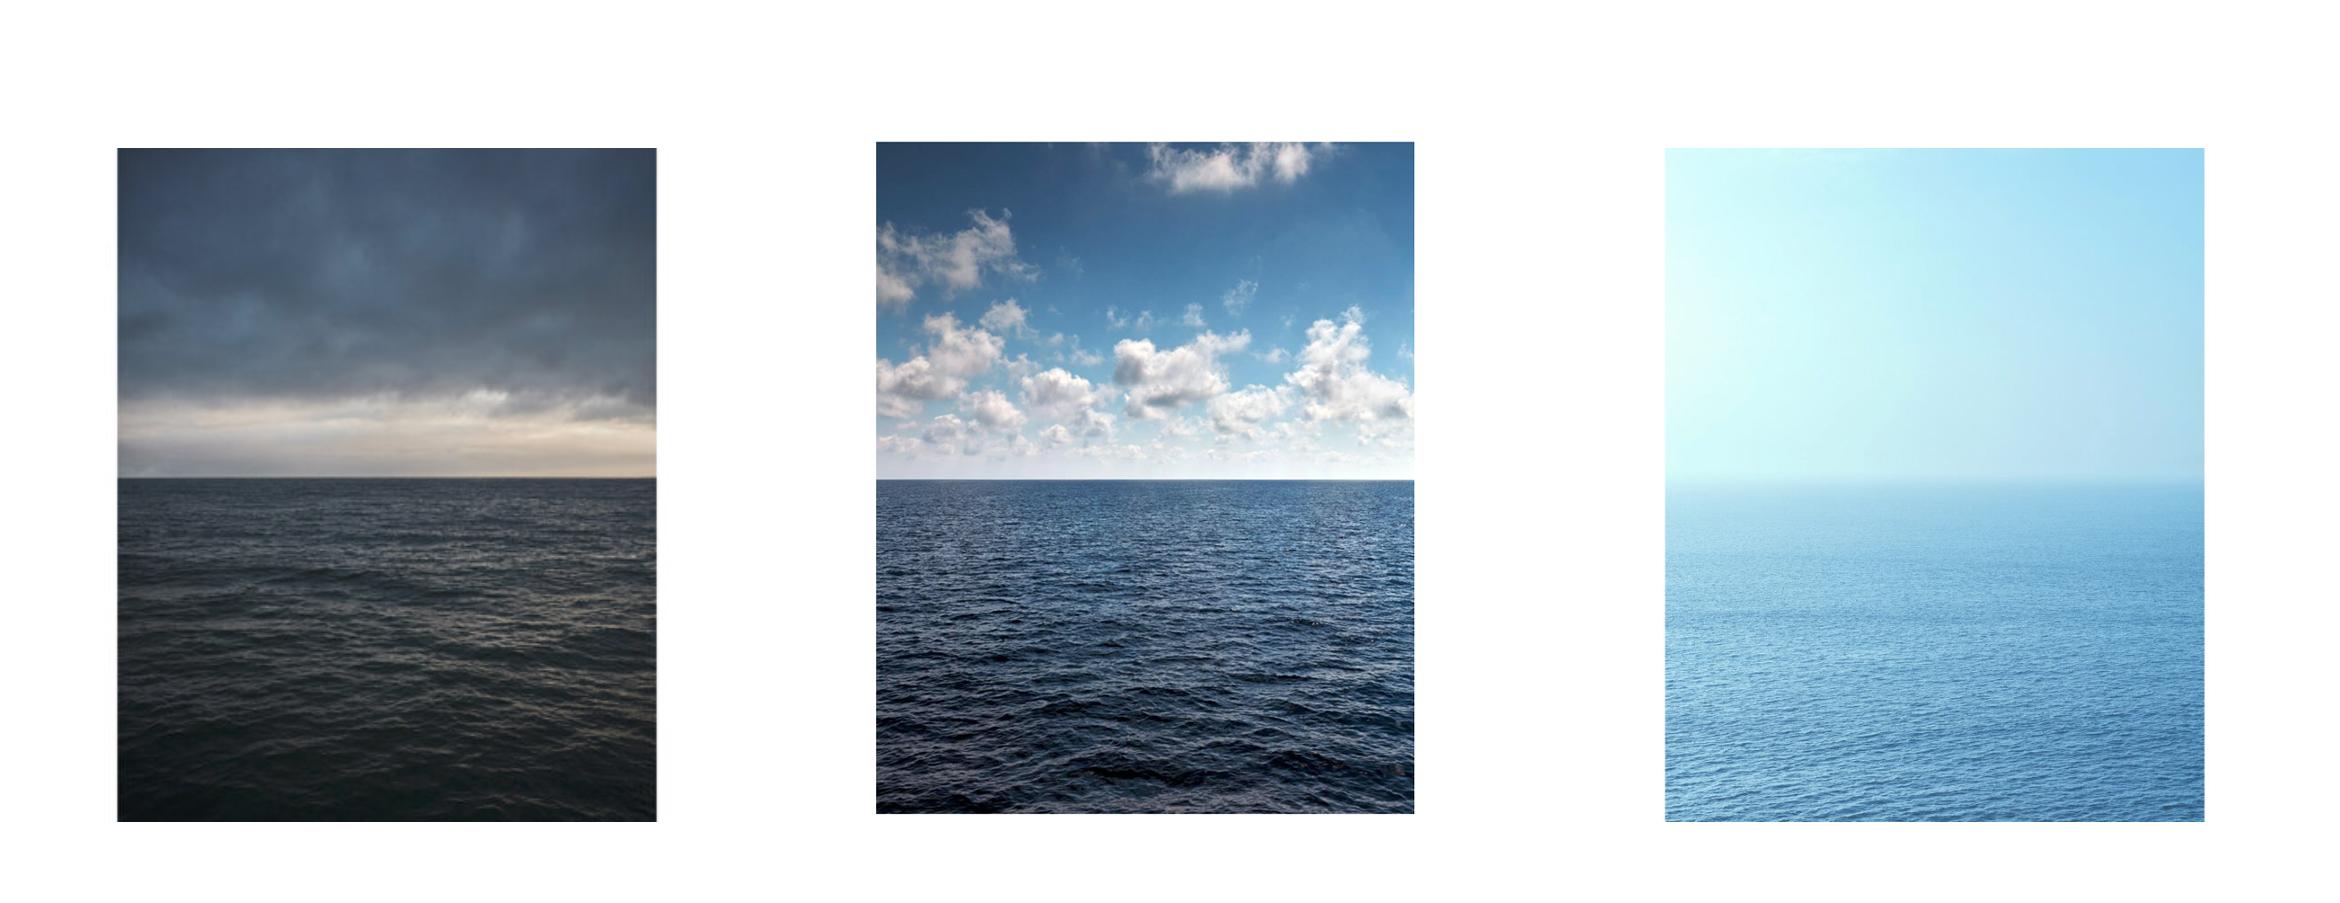 D'une série de photographies abstraites à grande échelle de couleurs sourdes et monochromatiques de la surface de l'eau de l'océan et de paysages nuageux.

SEASCAPE IV par Frank Schott
un hommage à Mark Rothko

72.5 x 58 pouces / 184cm x 147cm